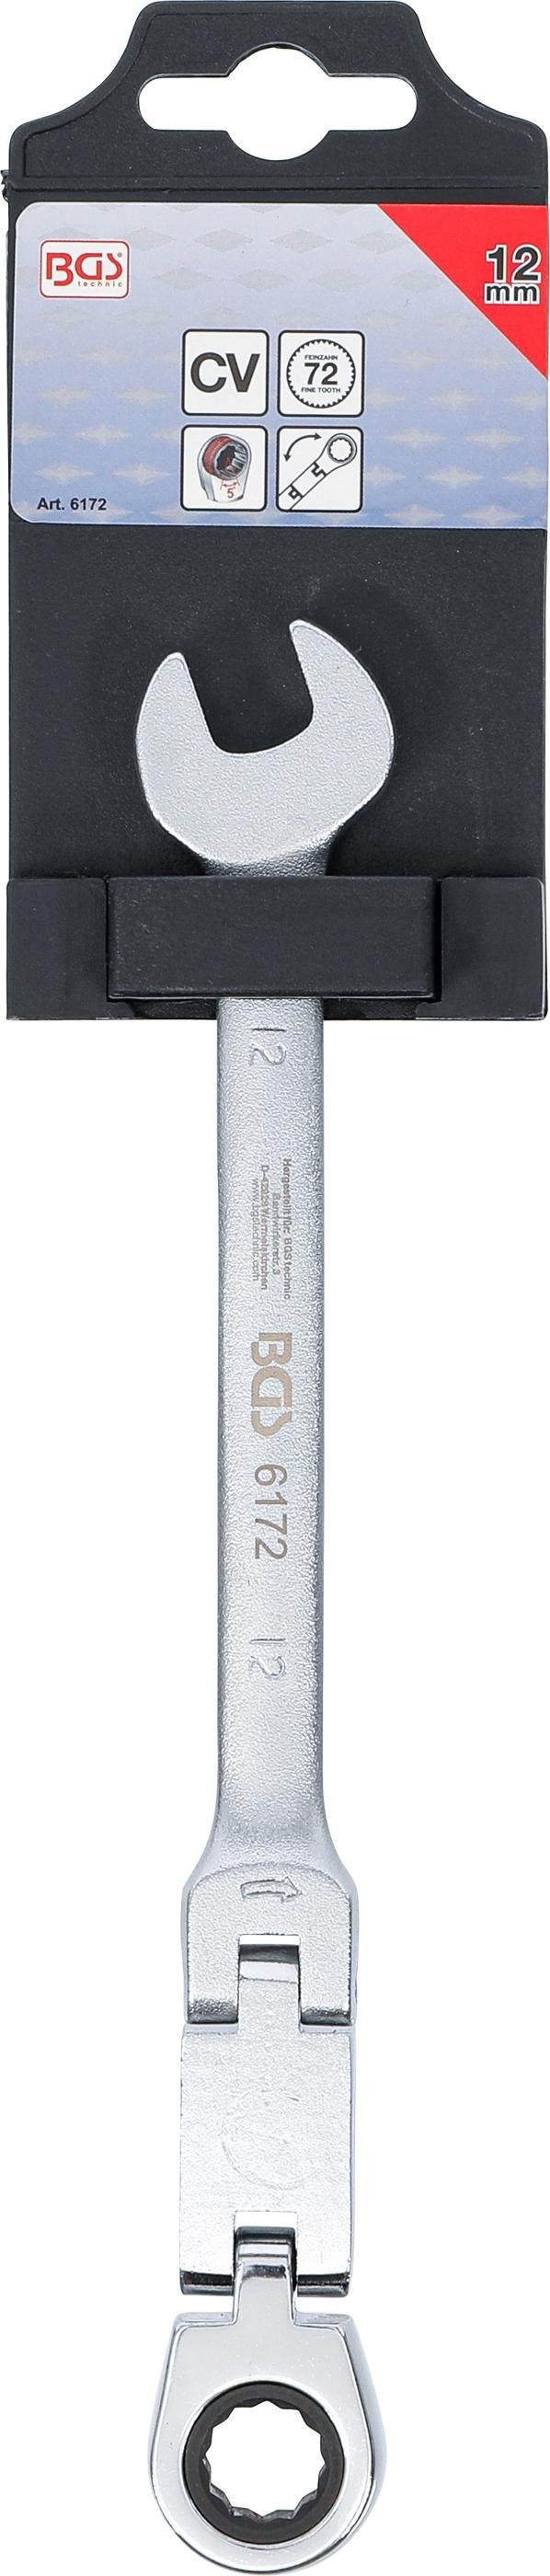 BGS abwinkelbar, SW Stecknuss 12 mm Doppelgelenk-Ratschenring-Maulschlüssel, technic